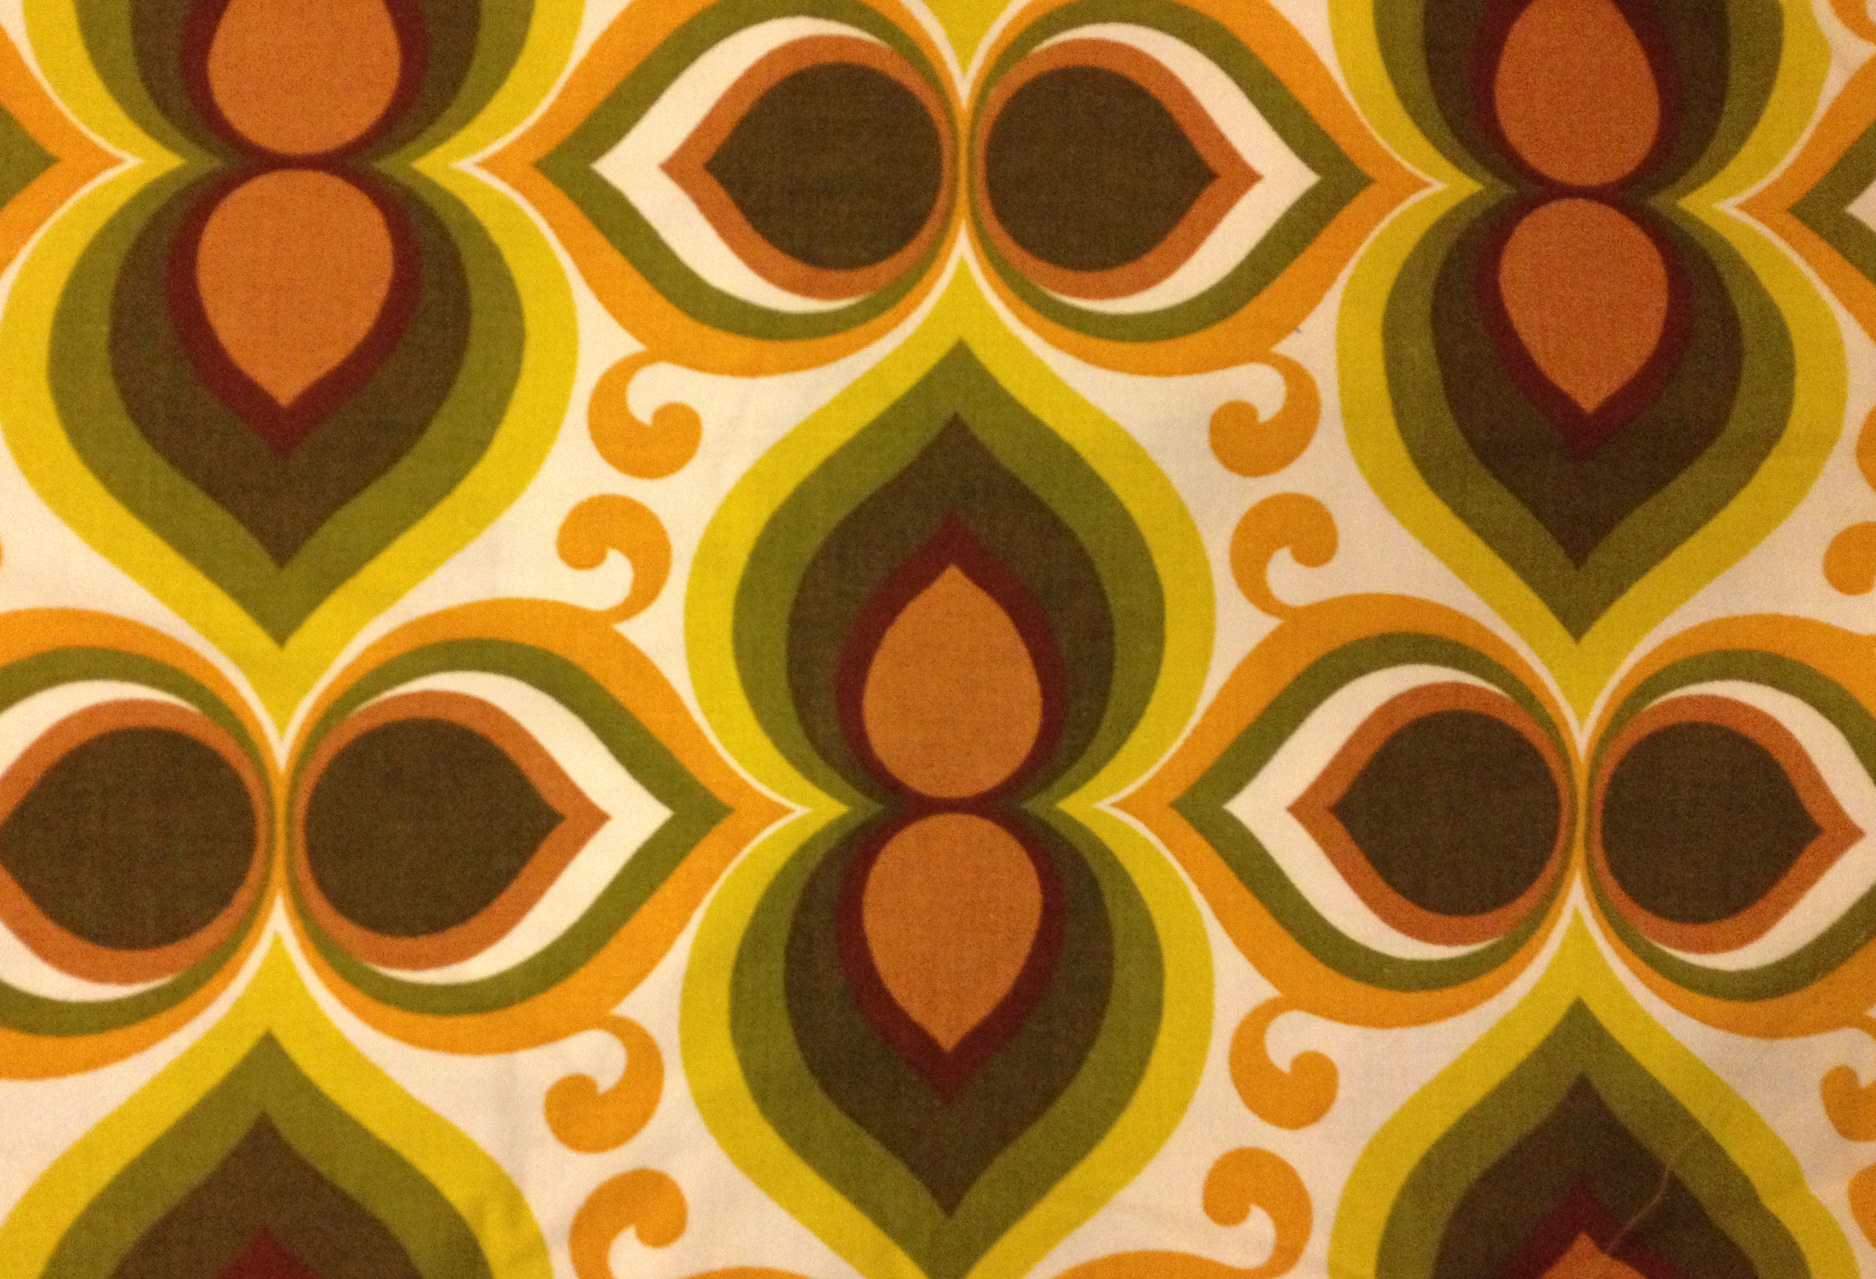 60 년대 스타일 벽지,무늬,주황색,노랑,초록,대칭